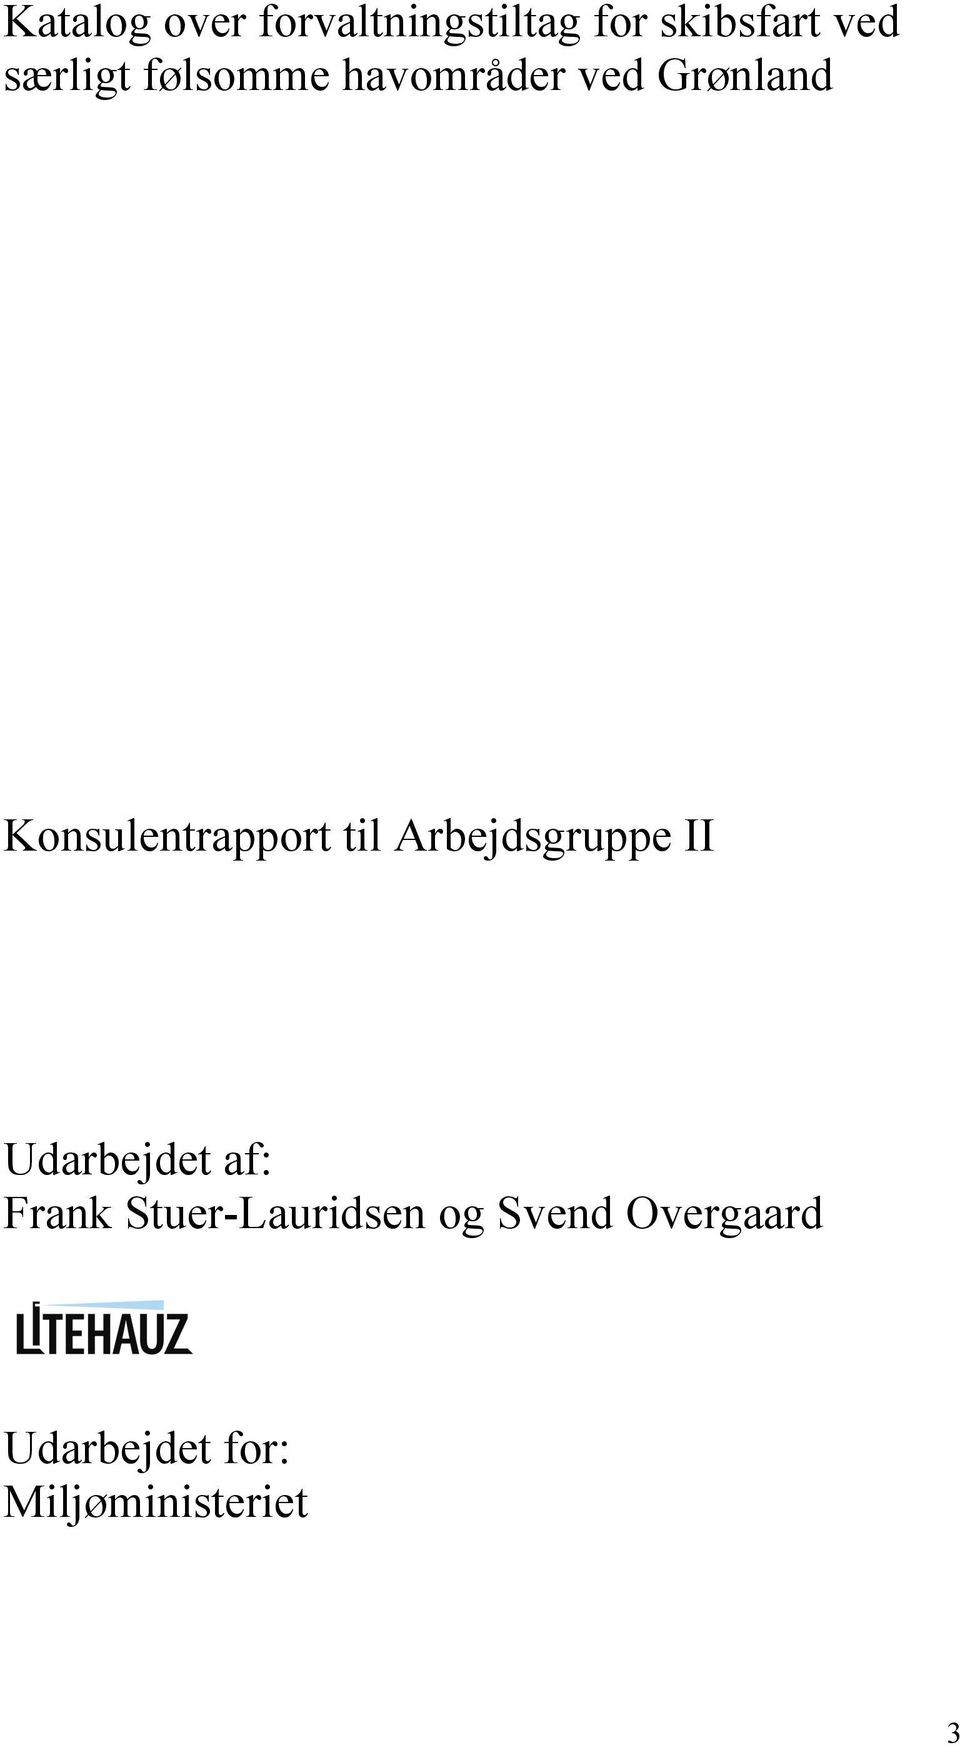 Konsulentrapport til Arbejdsgruppe II Udarbejdet af: